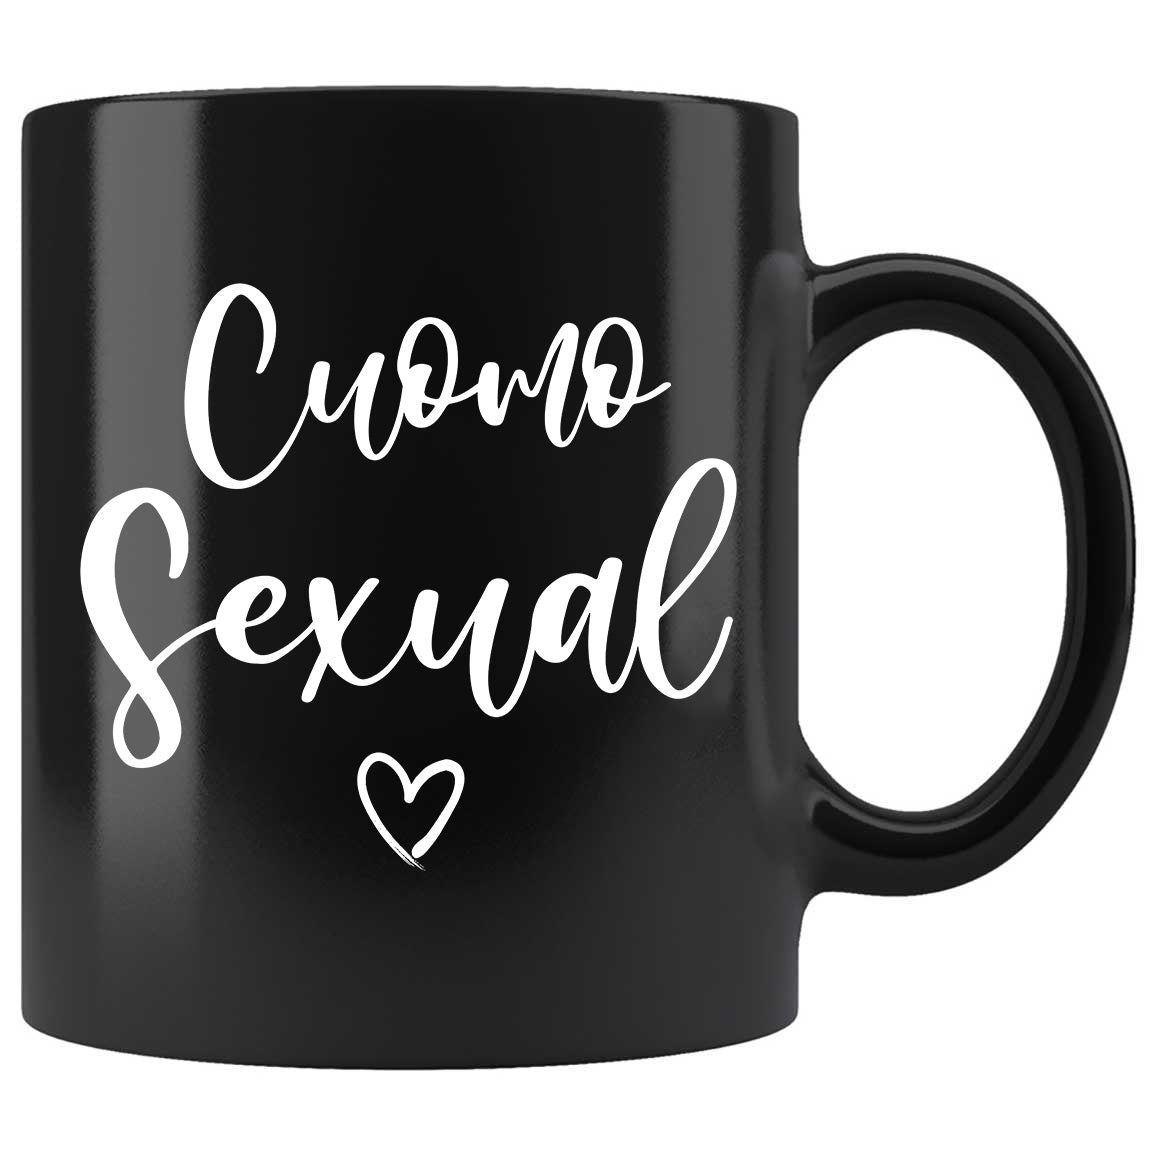 Skitongifts Funny Ceramic Coffee Mug Cuomo Sexual Cuomosexual A-N-Drew Cuomo Chris Cuomo Cuomo Brothers Governor Cuomo Cuomo For President Quarantine